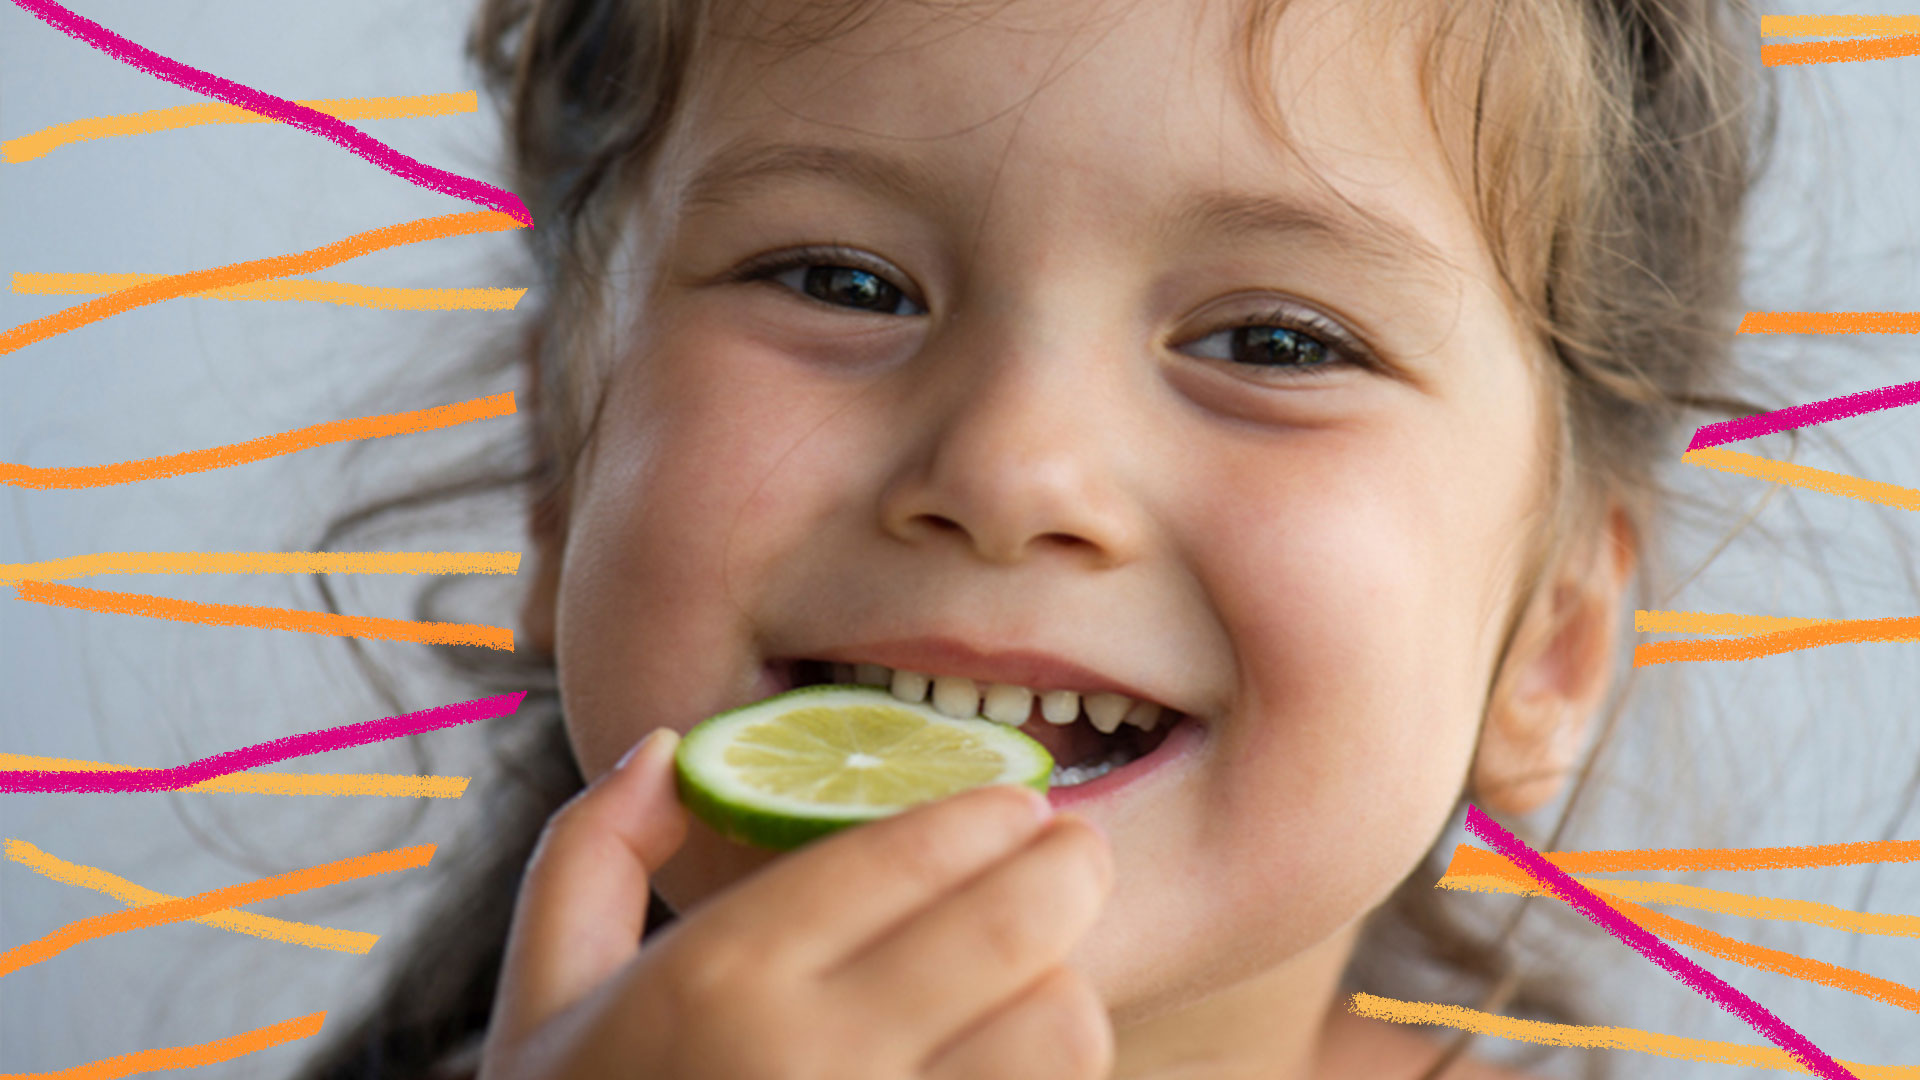 Alimentos para imunidade: foto de criança de cabelos loiros, que sorri ao experimentar um pedaço de limão.